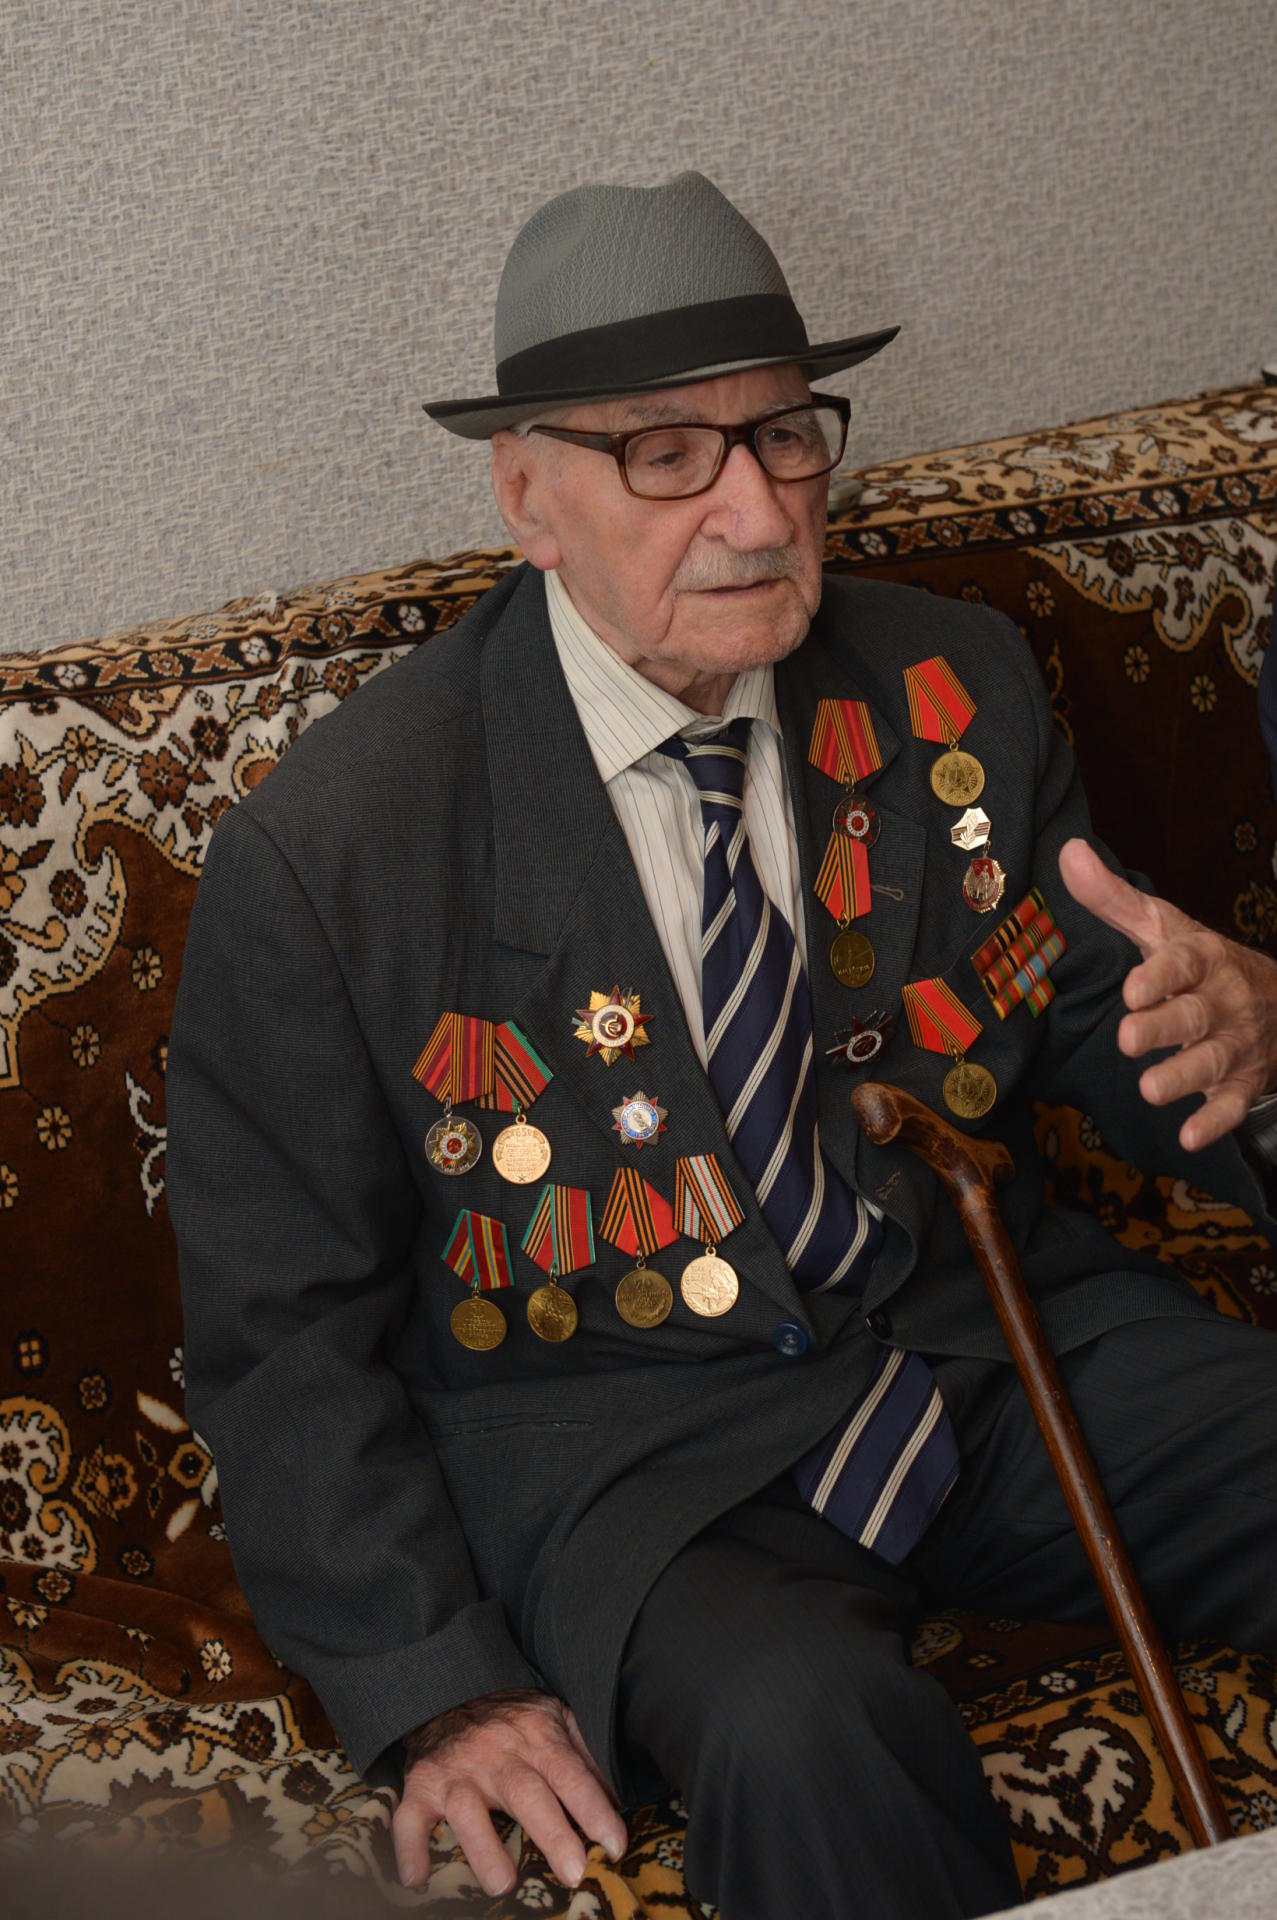 Rövşən Rzayev 100 yaşlı Böyük Vətən Müharibəsi veteranına baş çəkib (FOTO)